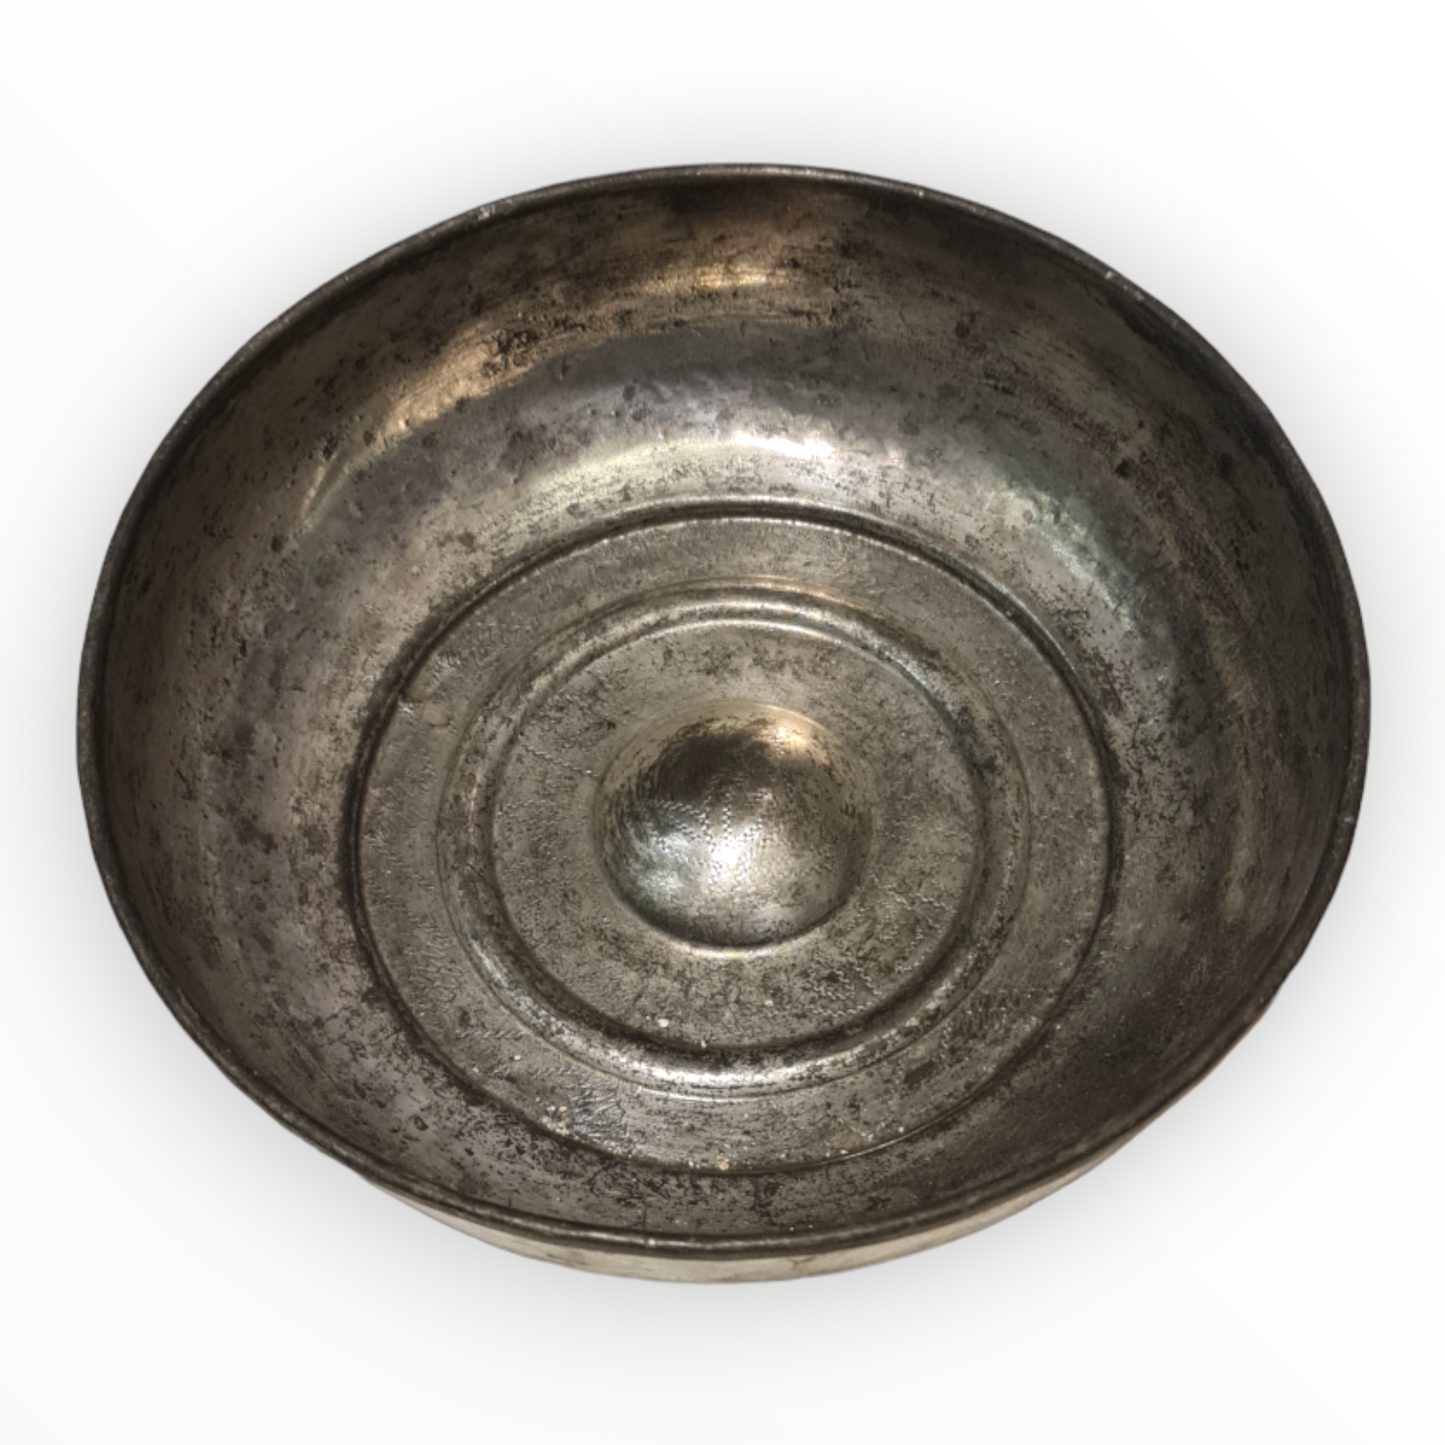 Antique Turkish Hammam Bowl - Turkish Bath Copper Bowl with Sand